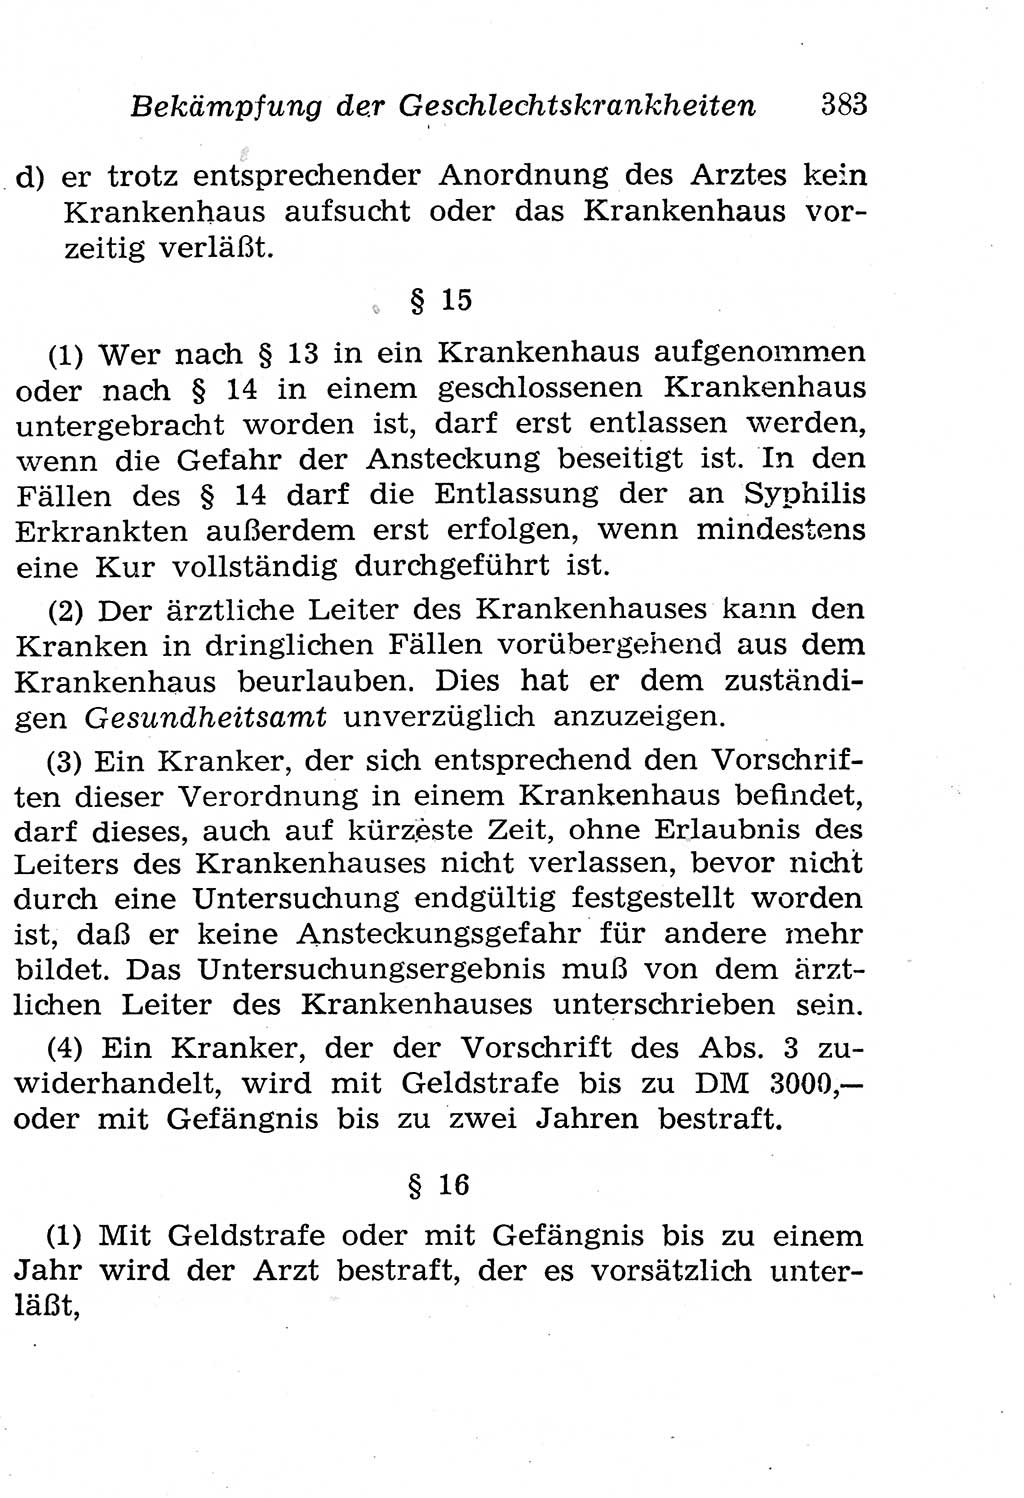 Strafgesetzbuch (StGB) und andere Strafgesetze [Deutsche Demokratische Republik (DDR)] 1958, Seite 383 (StGB Strafges. DDR 1958, S. 383)